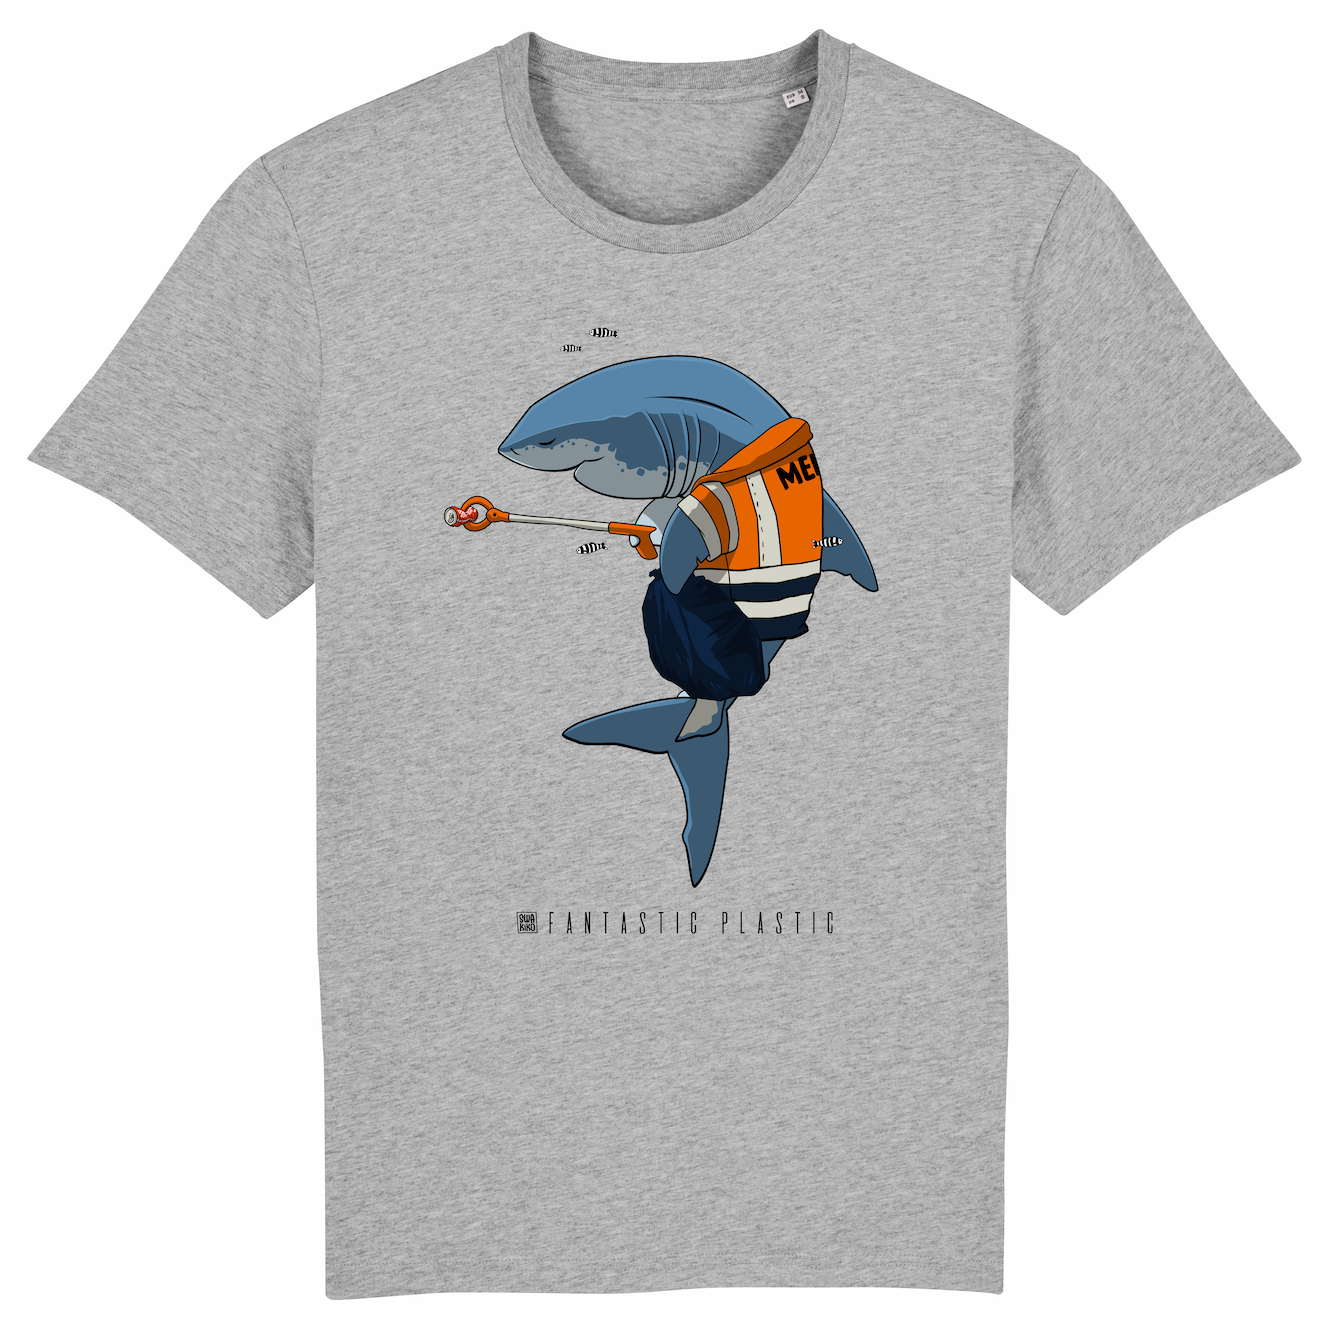 Grijs T-shirt met design van een haai die de zee schoonmaakt met een knijpstok: Cleaning Shark